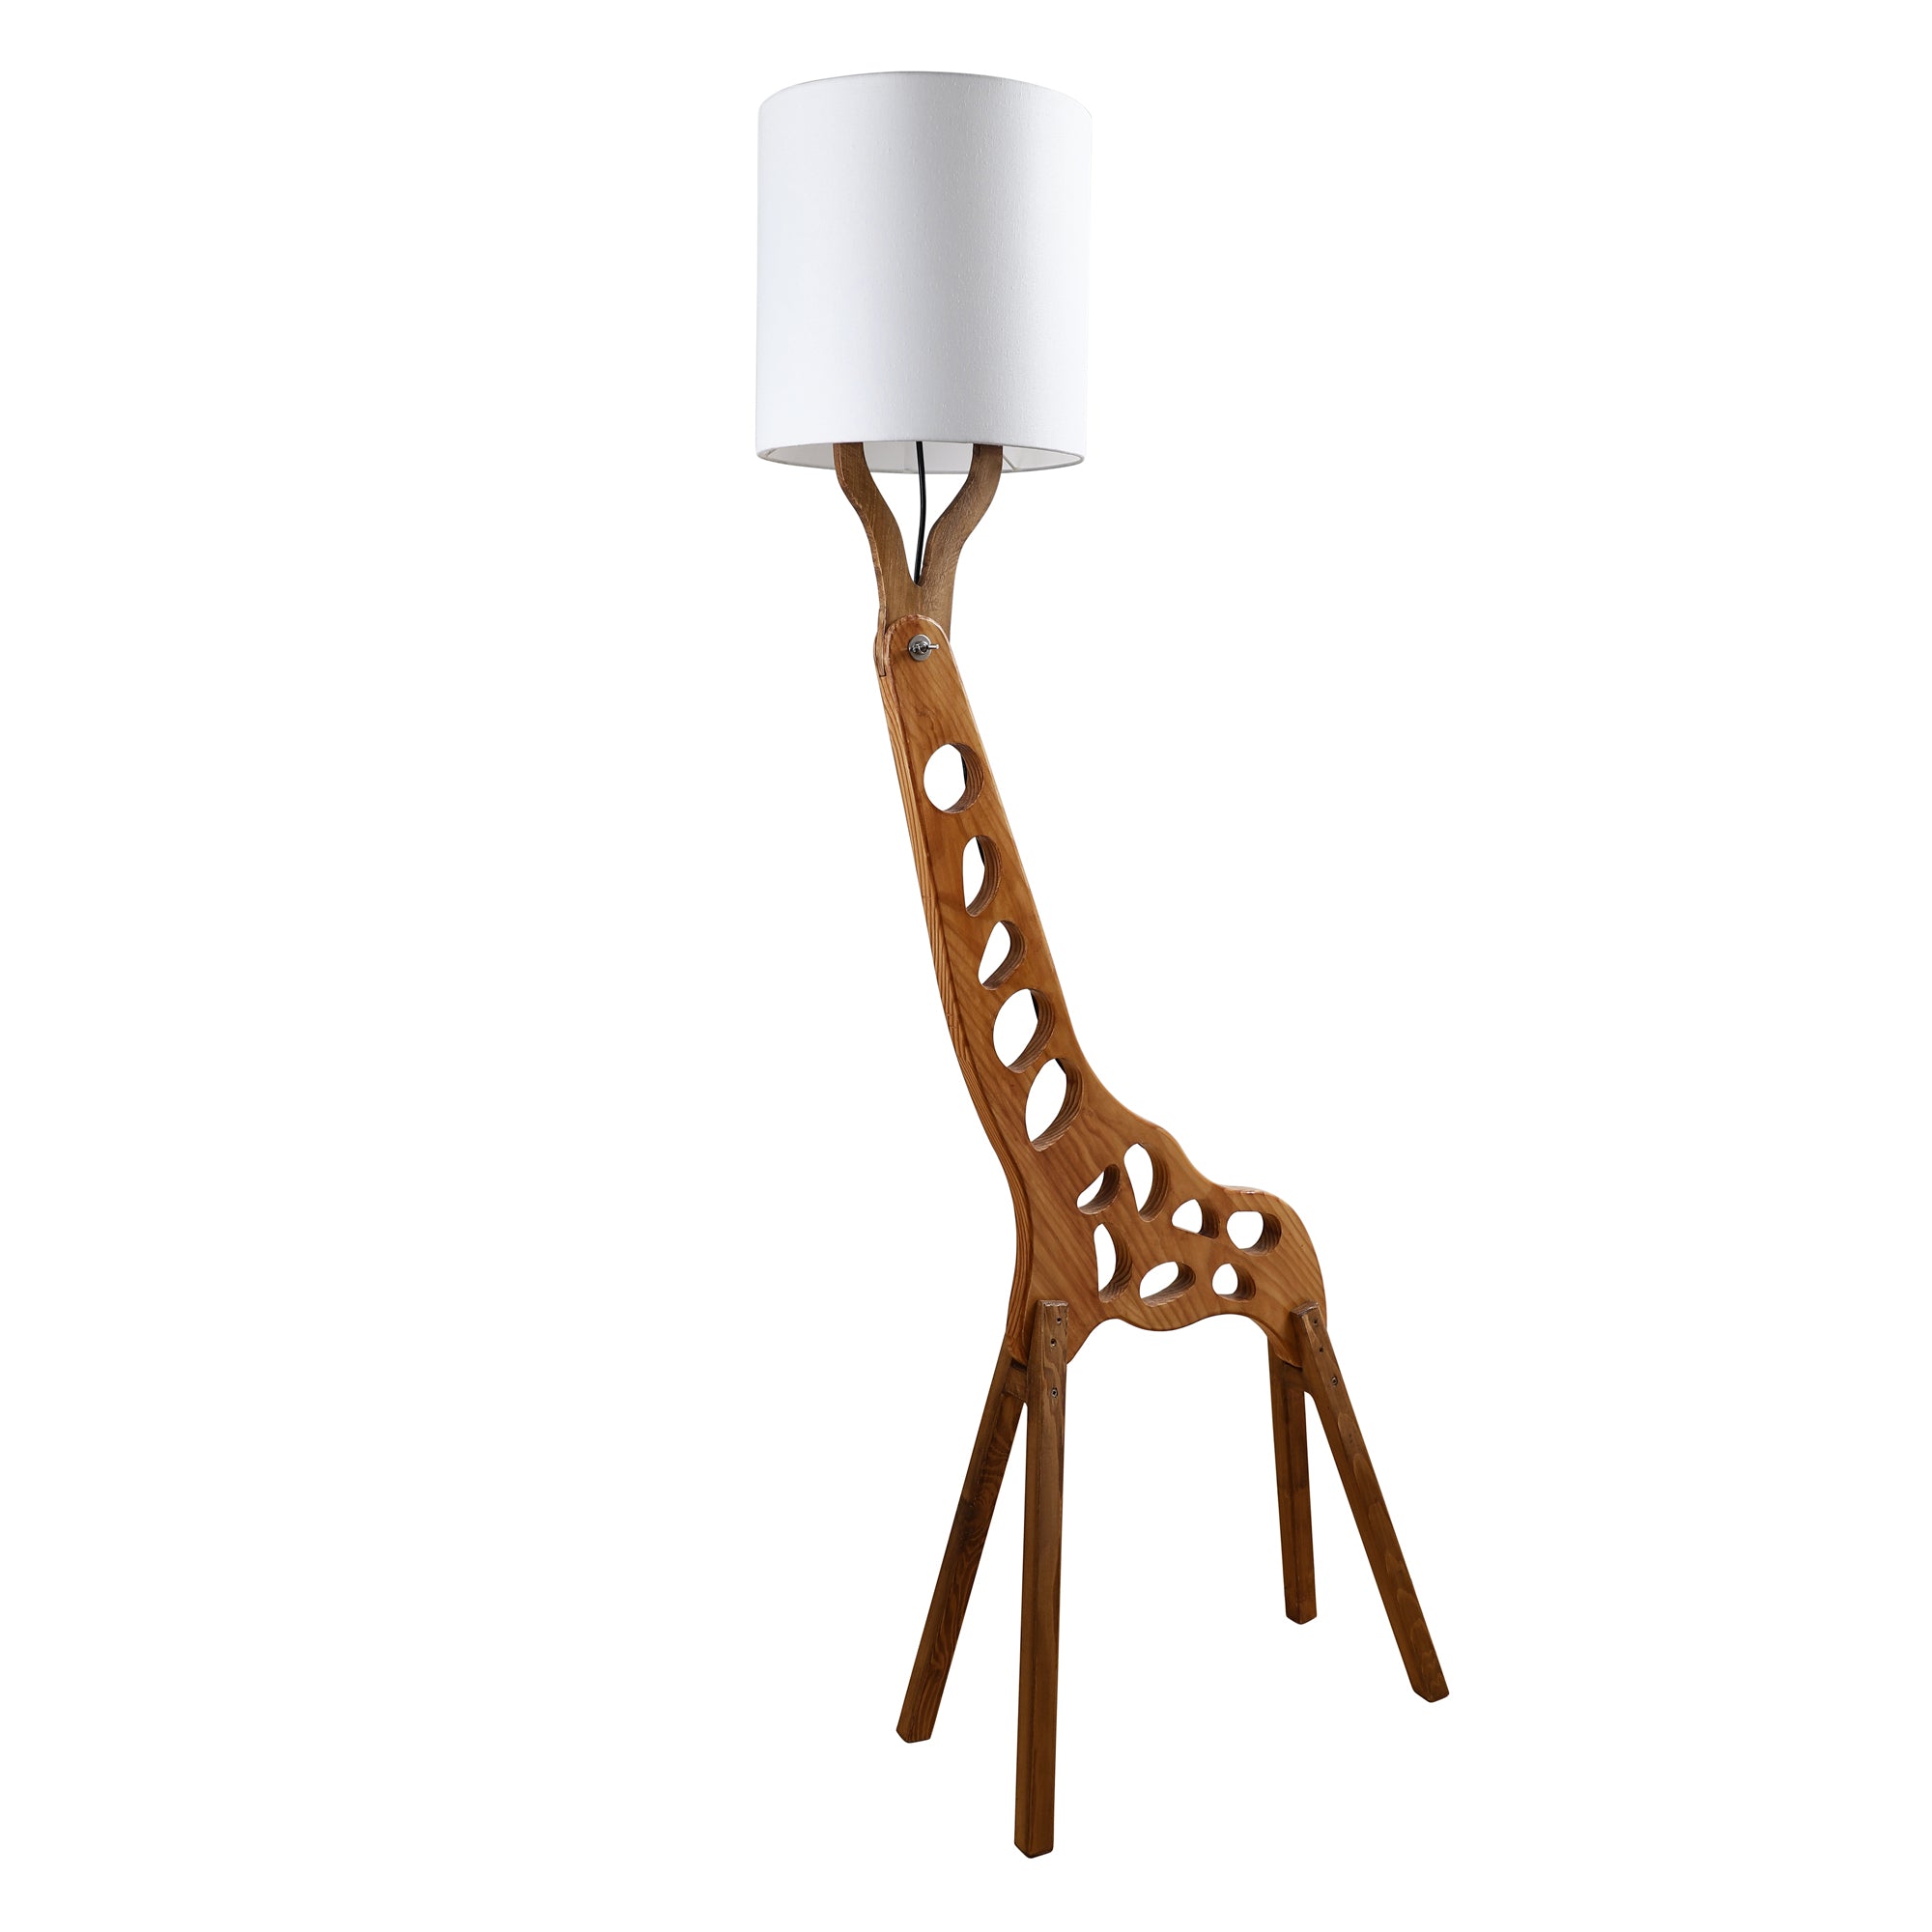 The Giraffe Floor Lamp